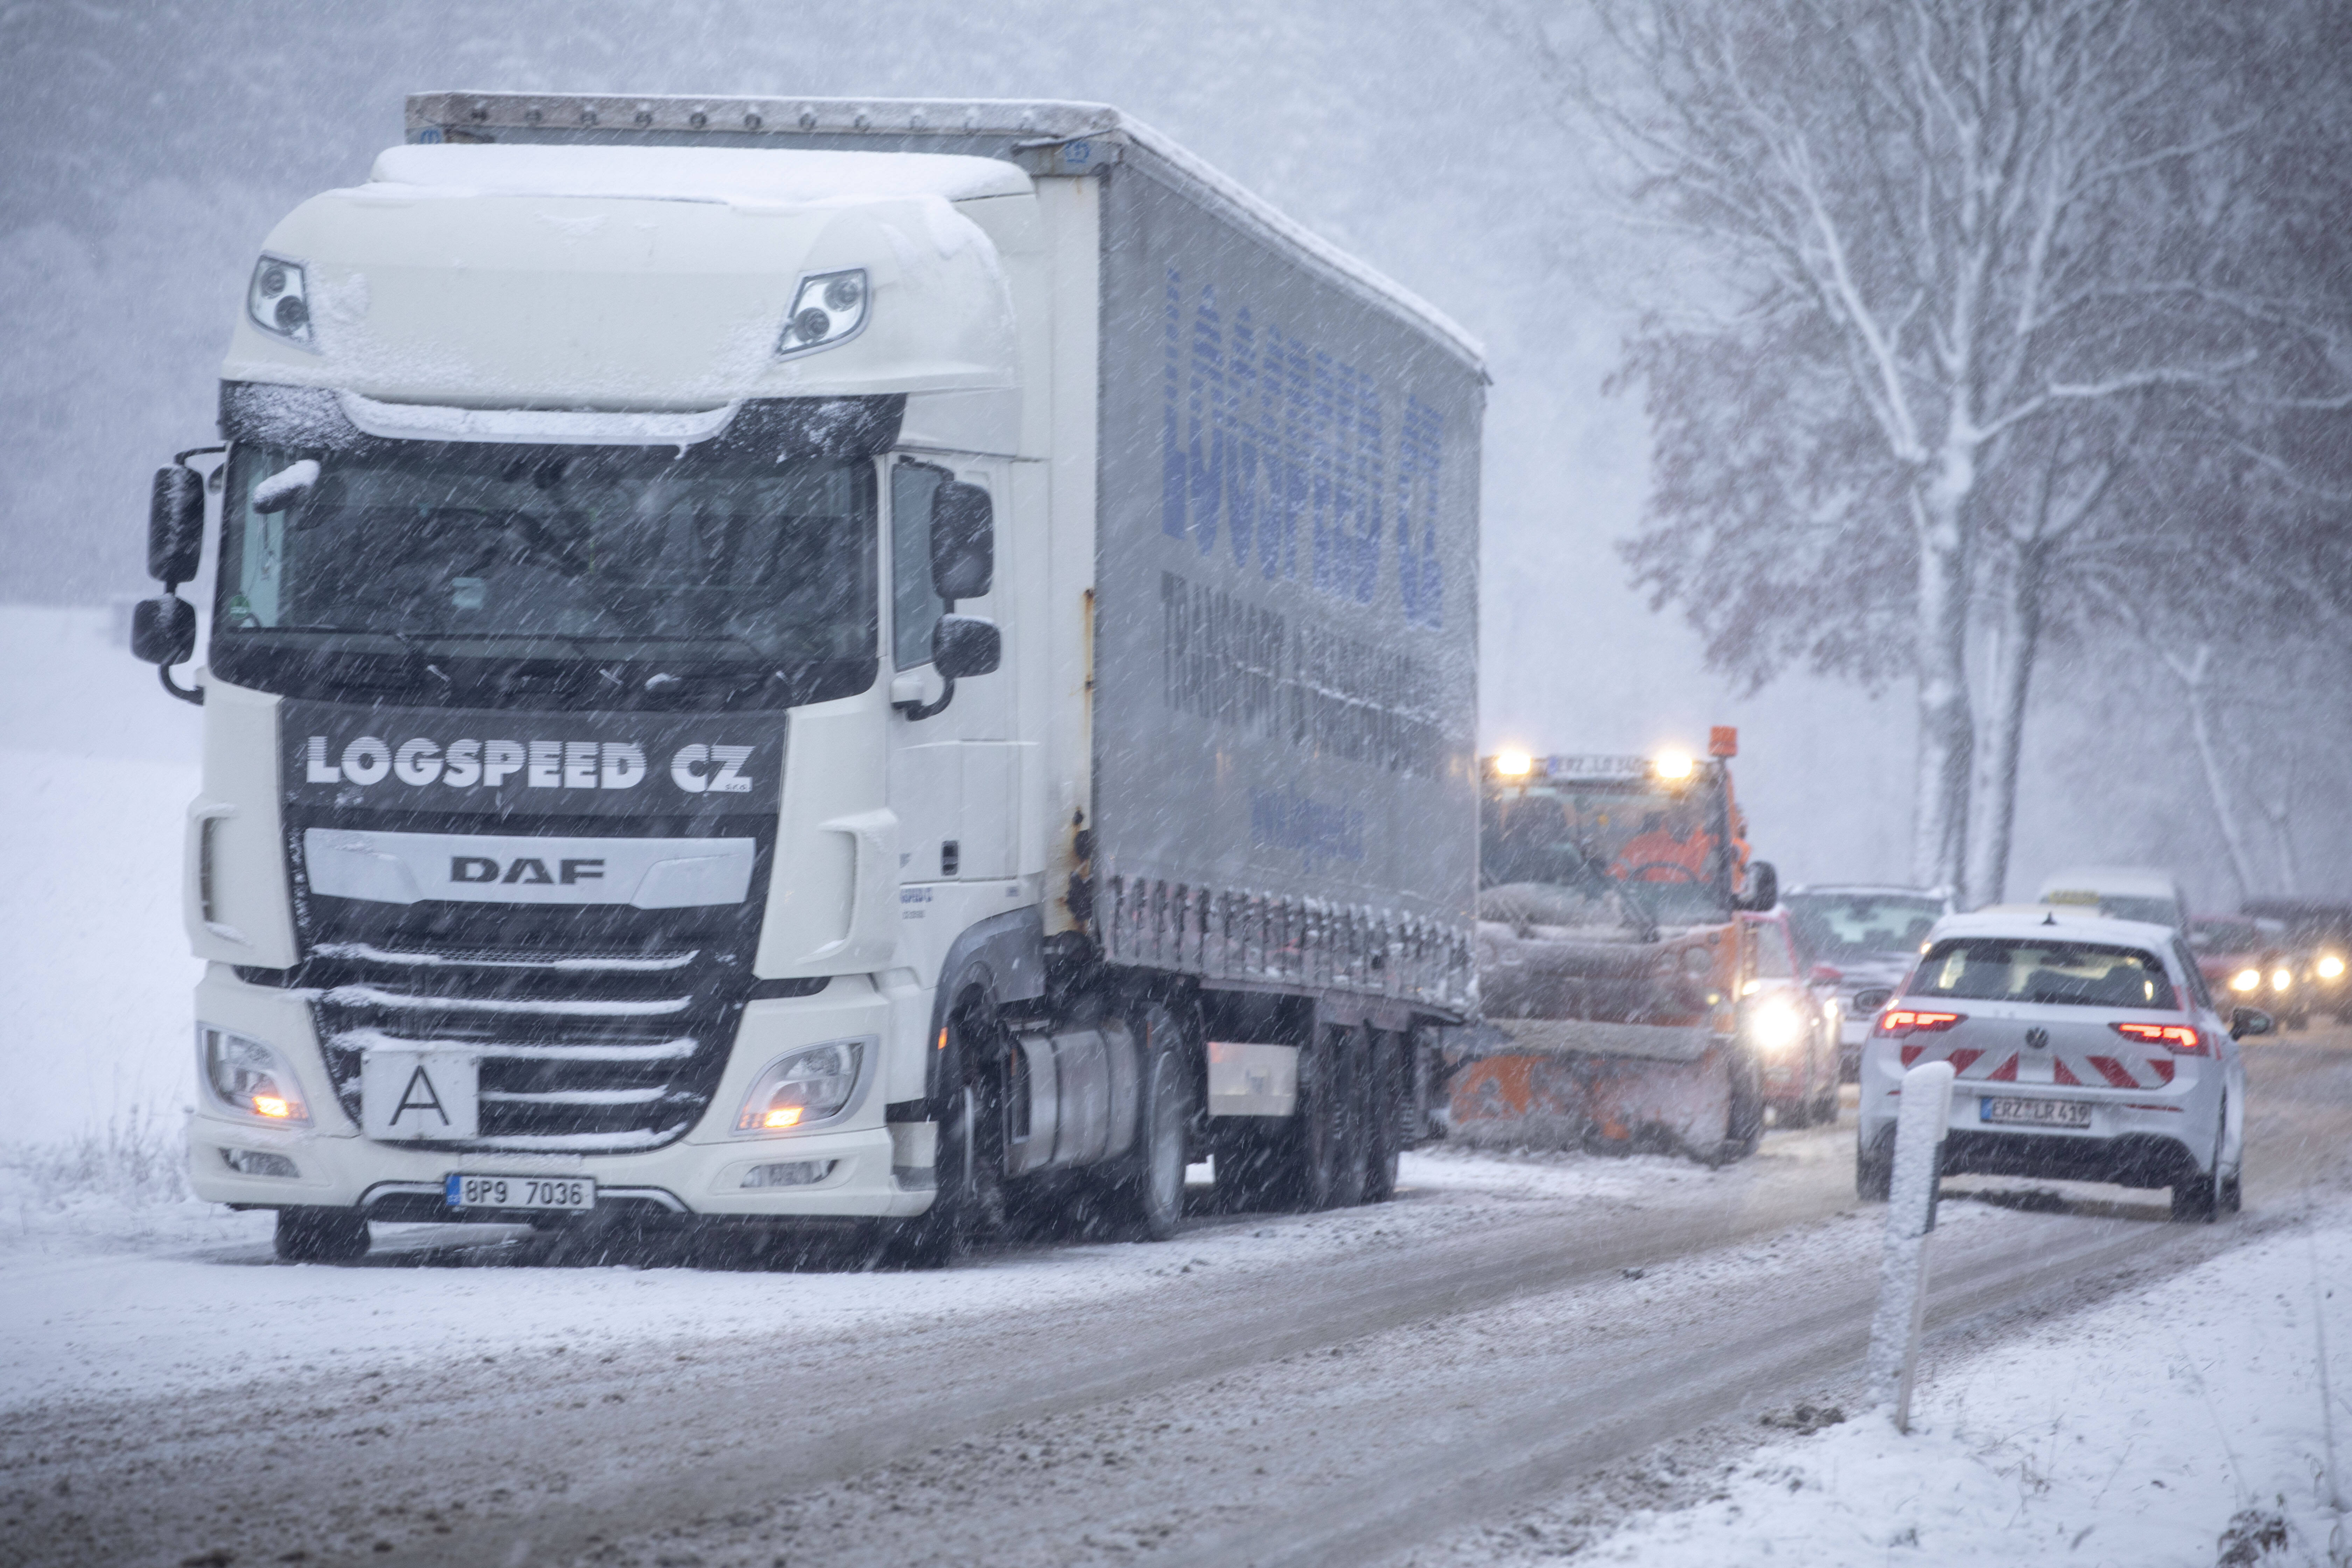 Schnee-Alarm für Deutschland! Meteorologen sagen neue kräftige Schneefälle voraus - In diesen Gebieten soll es besonders brenzlig werden